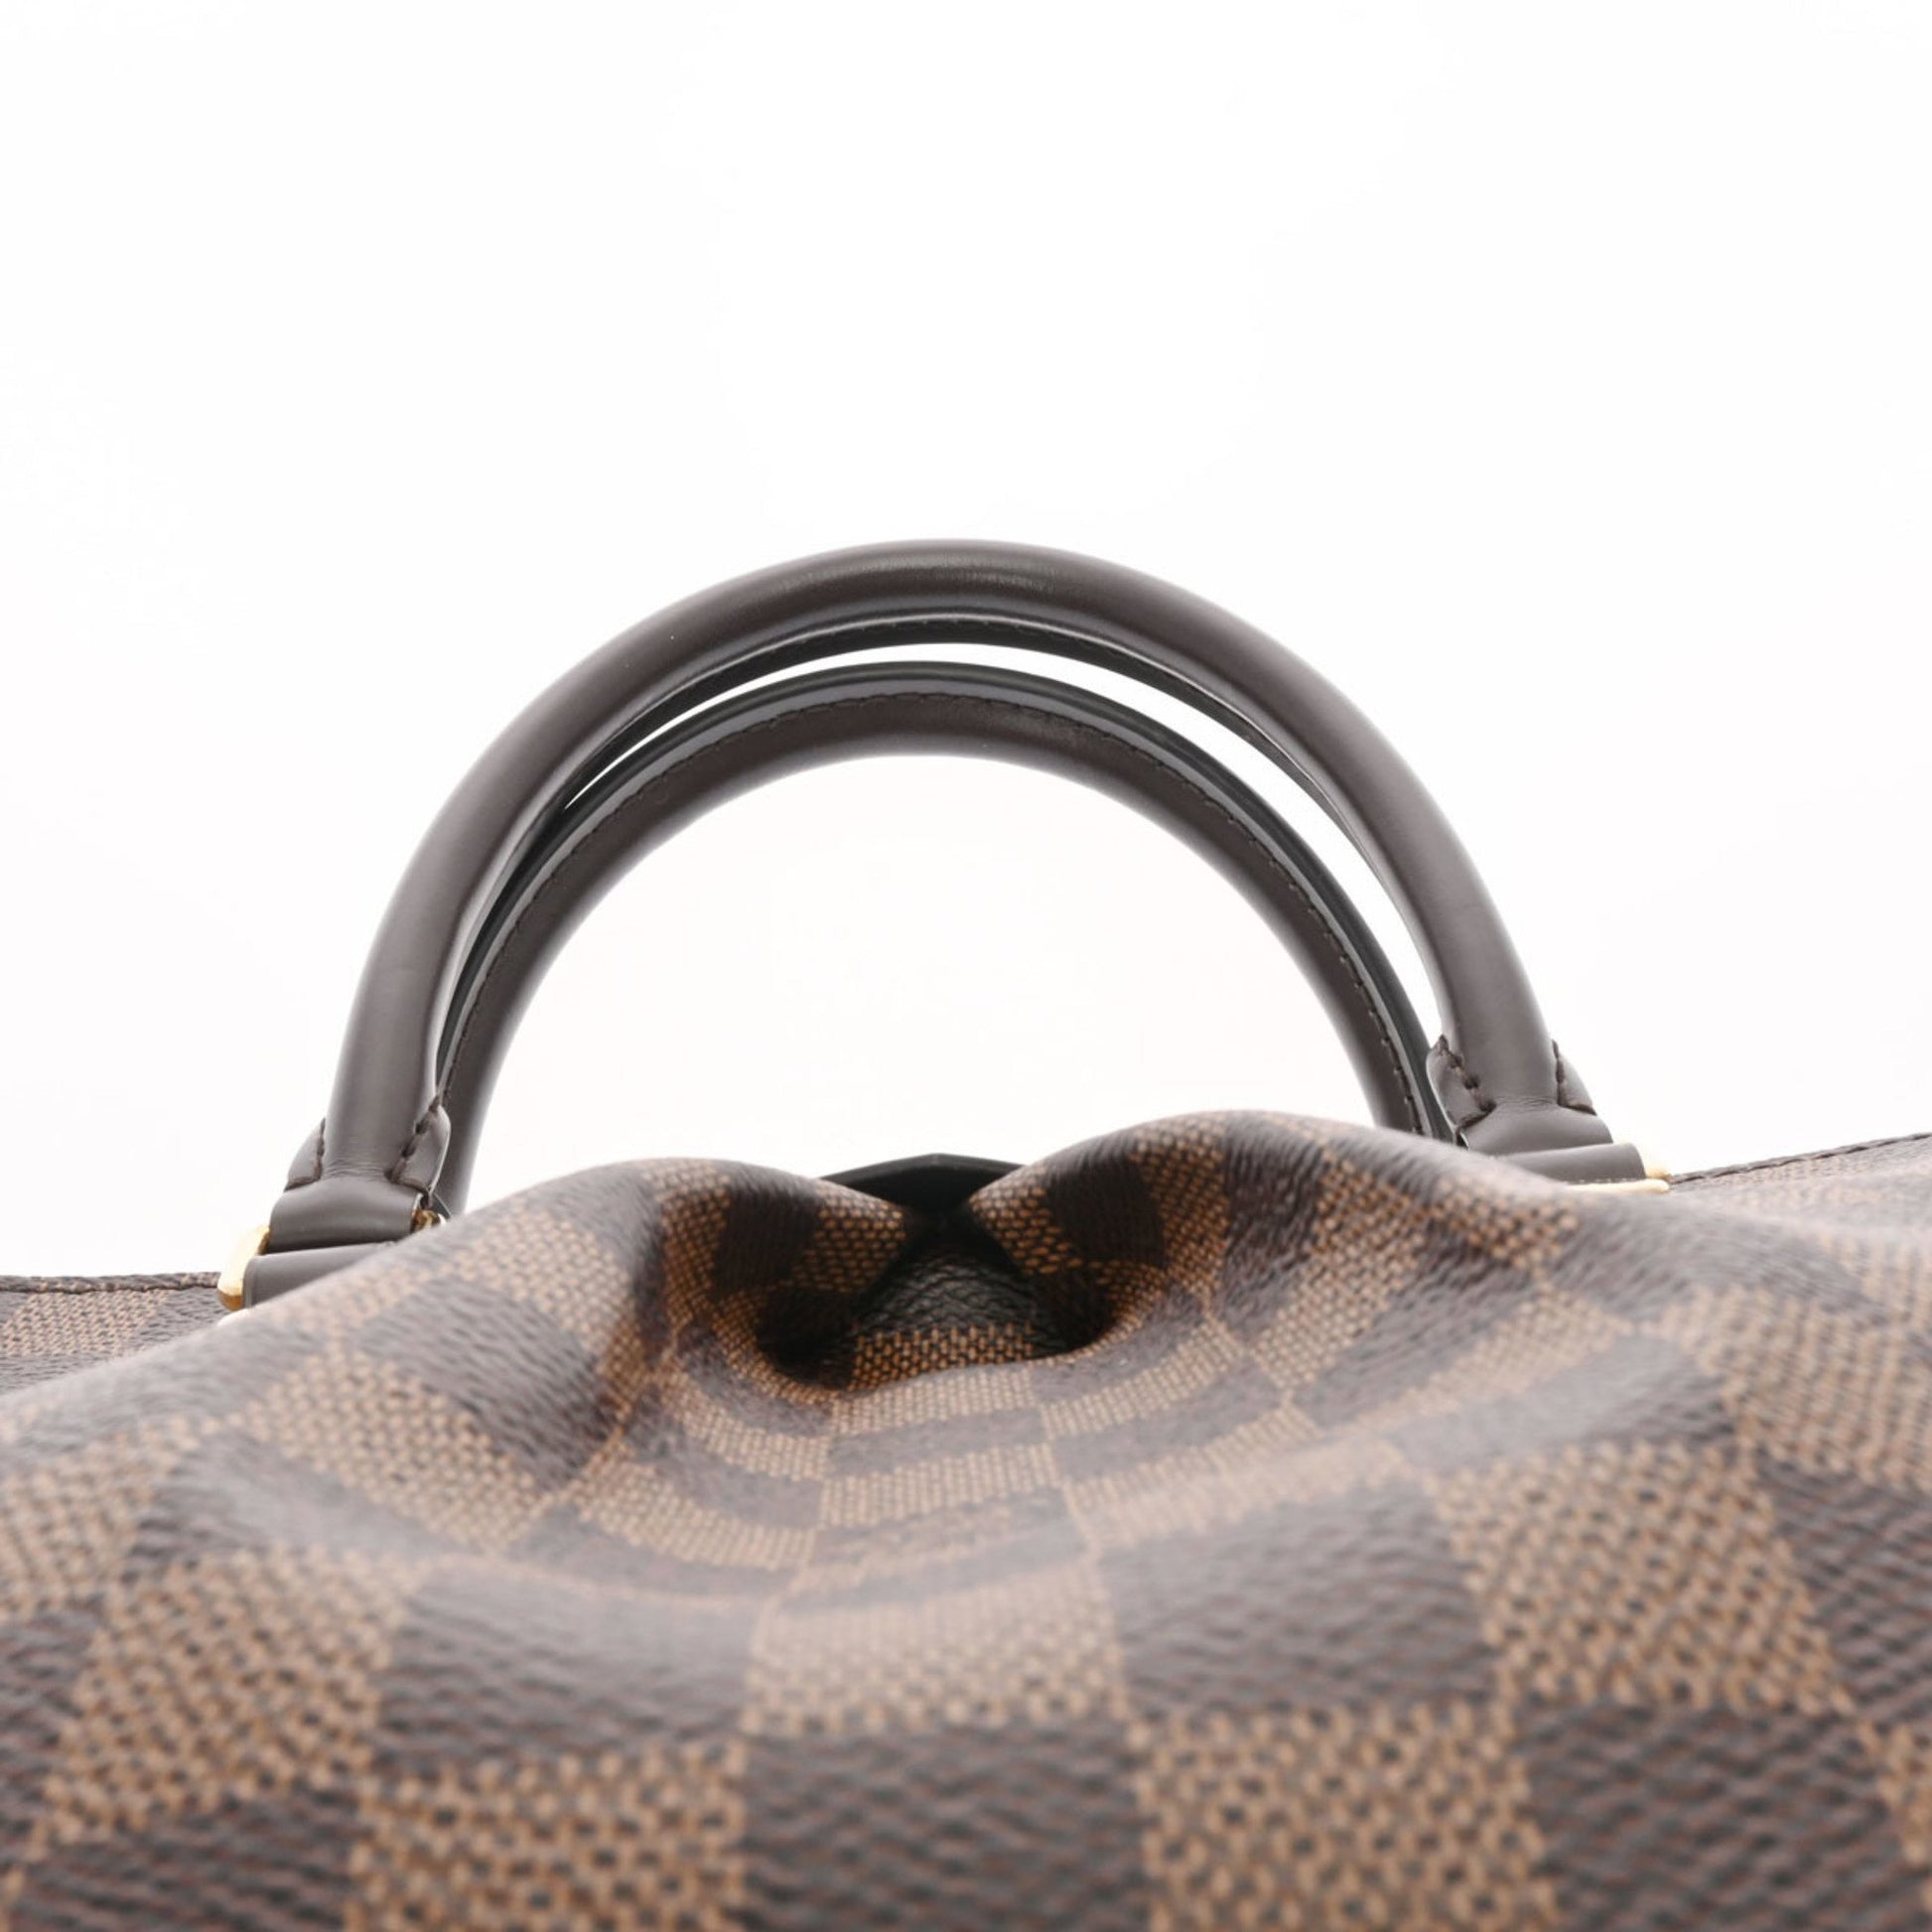 LOUIS VUITTON Louis Vuitton Damier Sienna PM Brown N41545 Ladies Canvas Bag